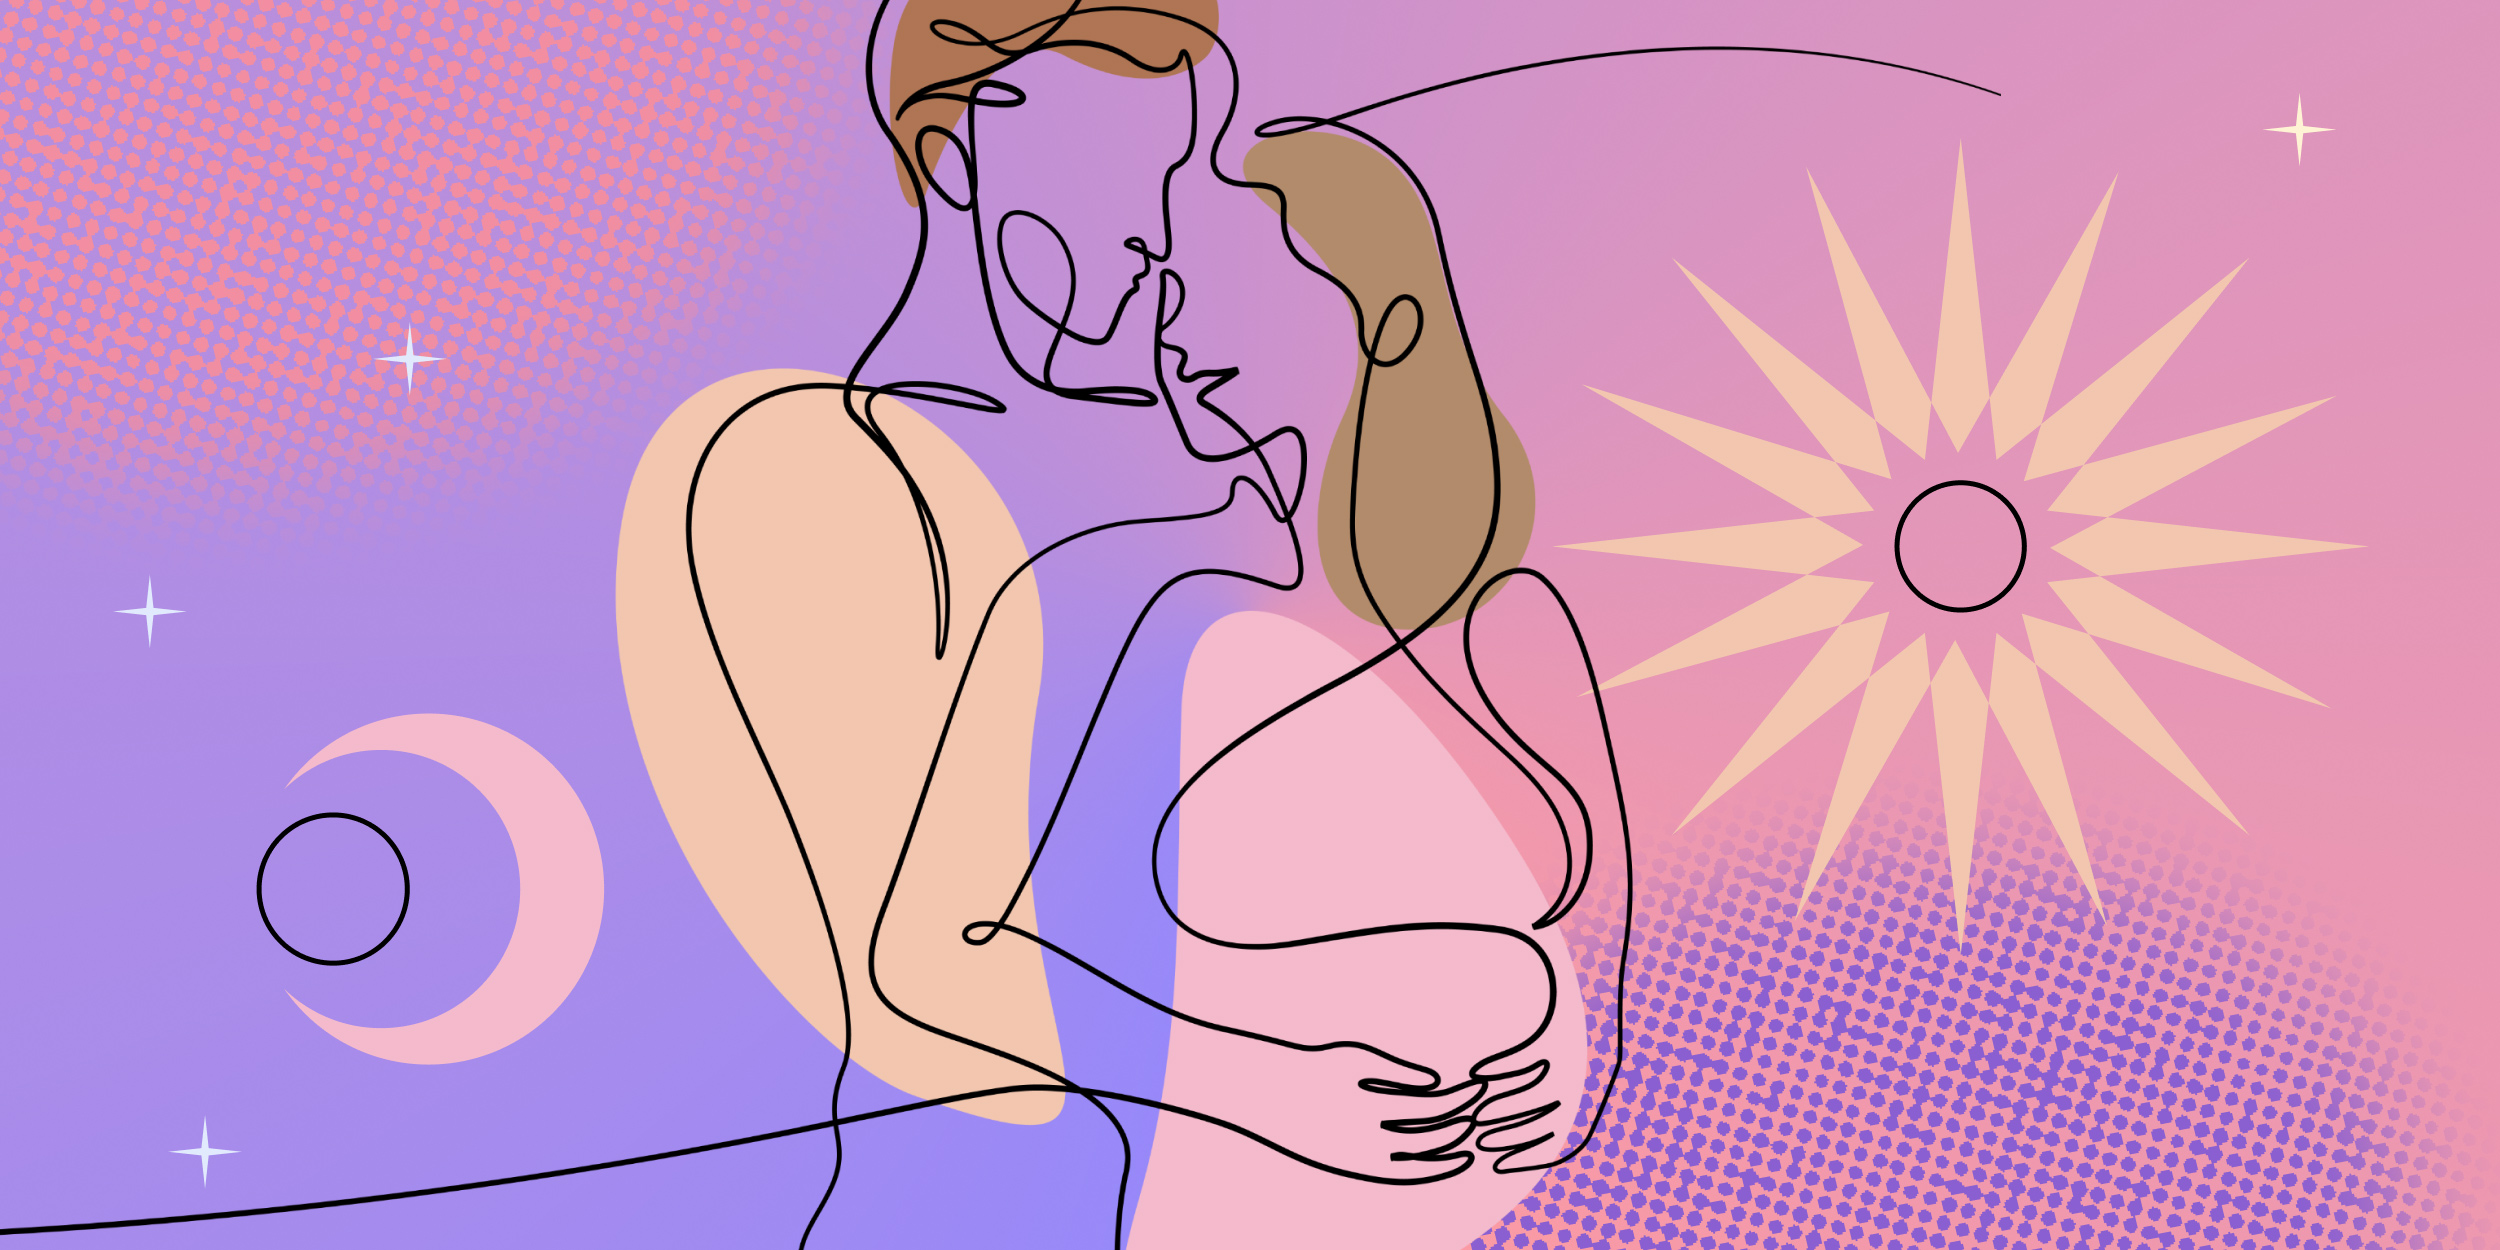 Плюсы секса во время беременности